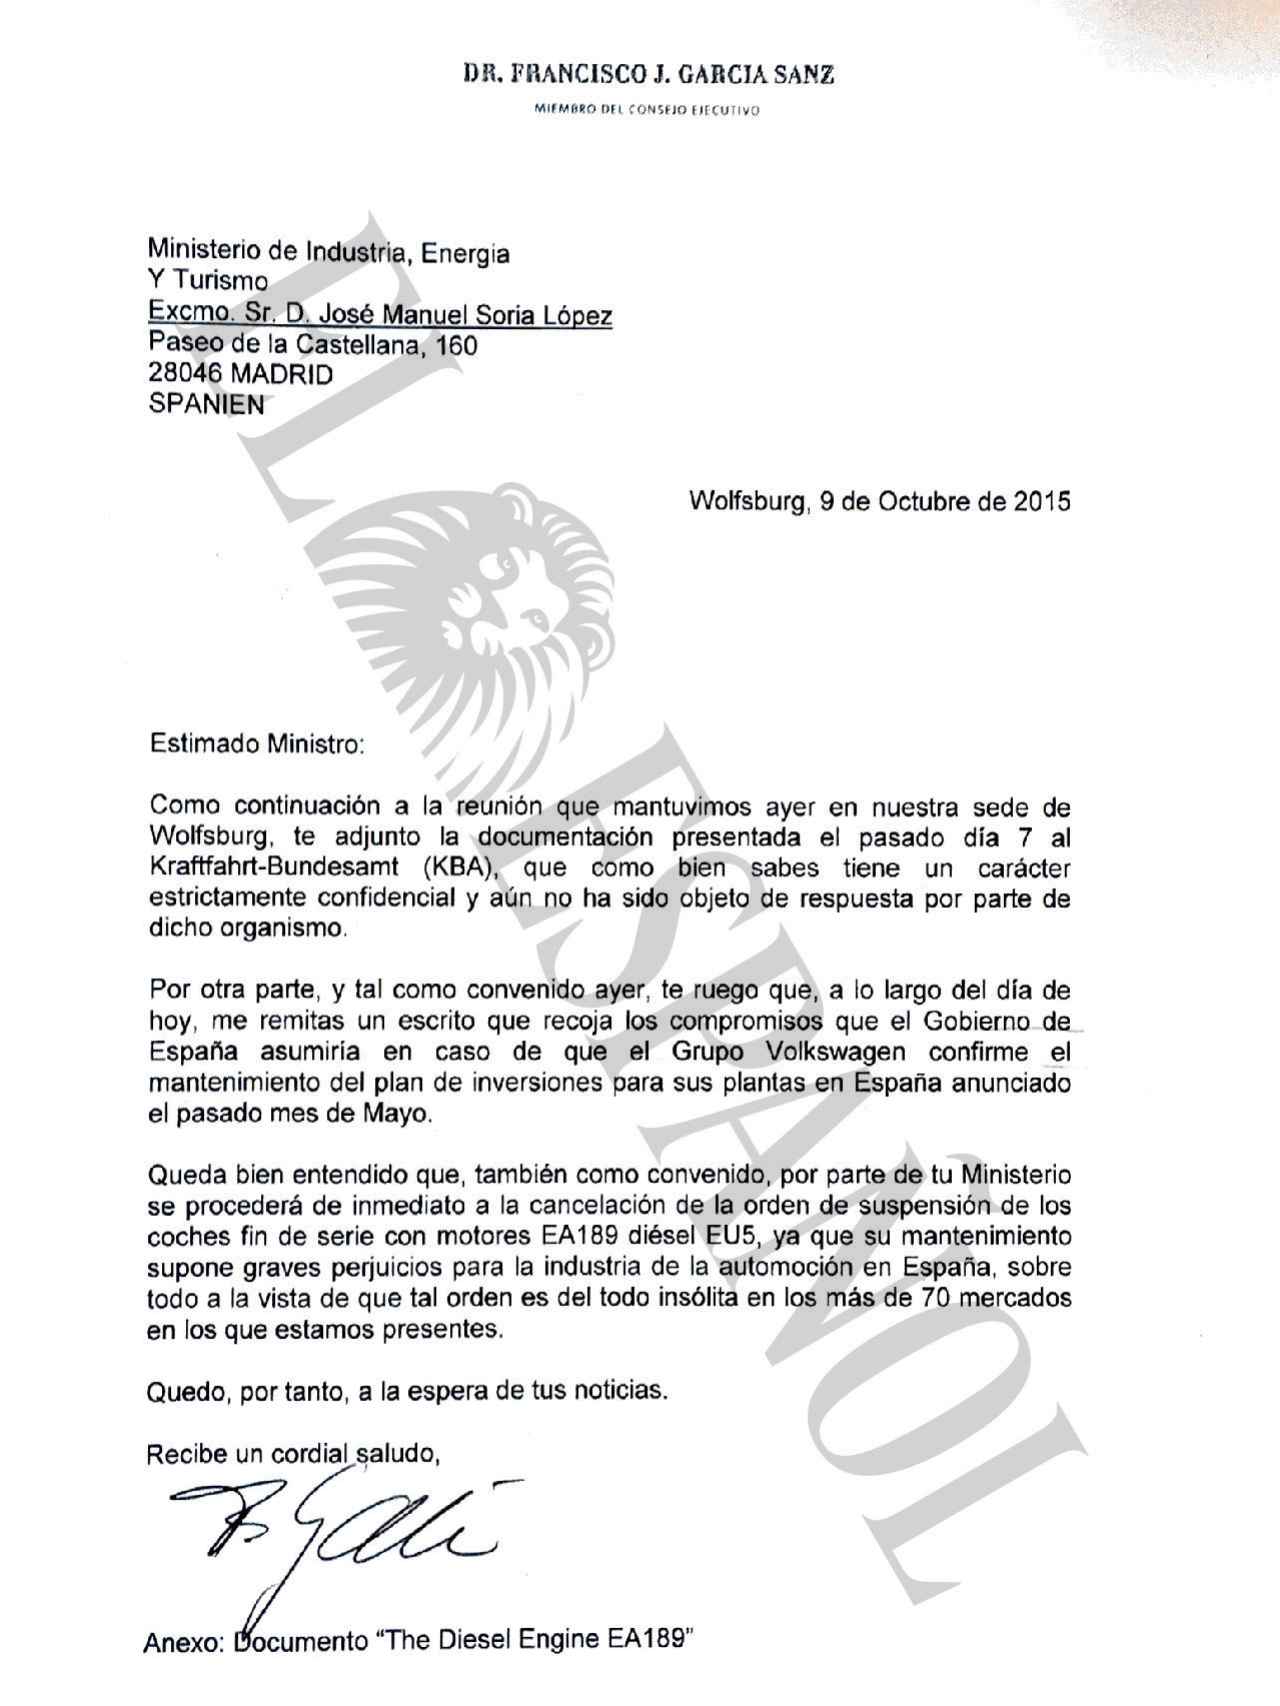 Carta del vicepresidente mundial de compras de Volkswagen al ministro de Industria.